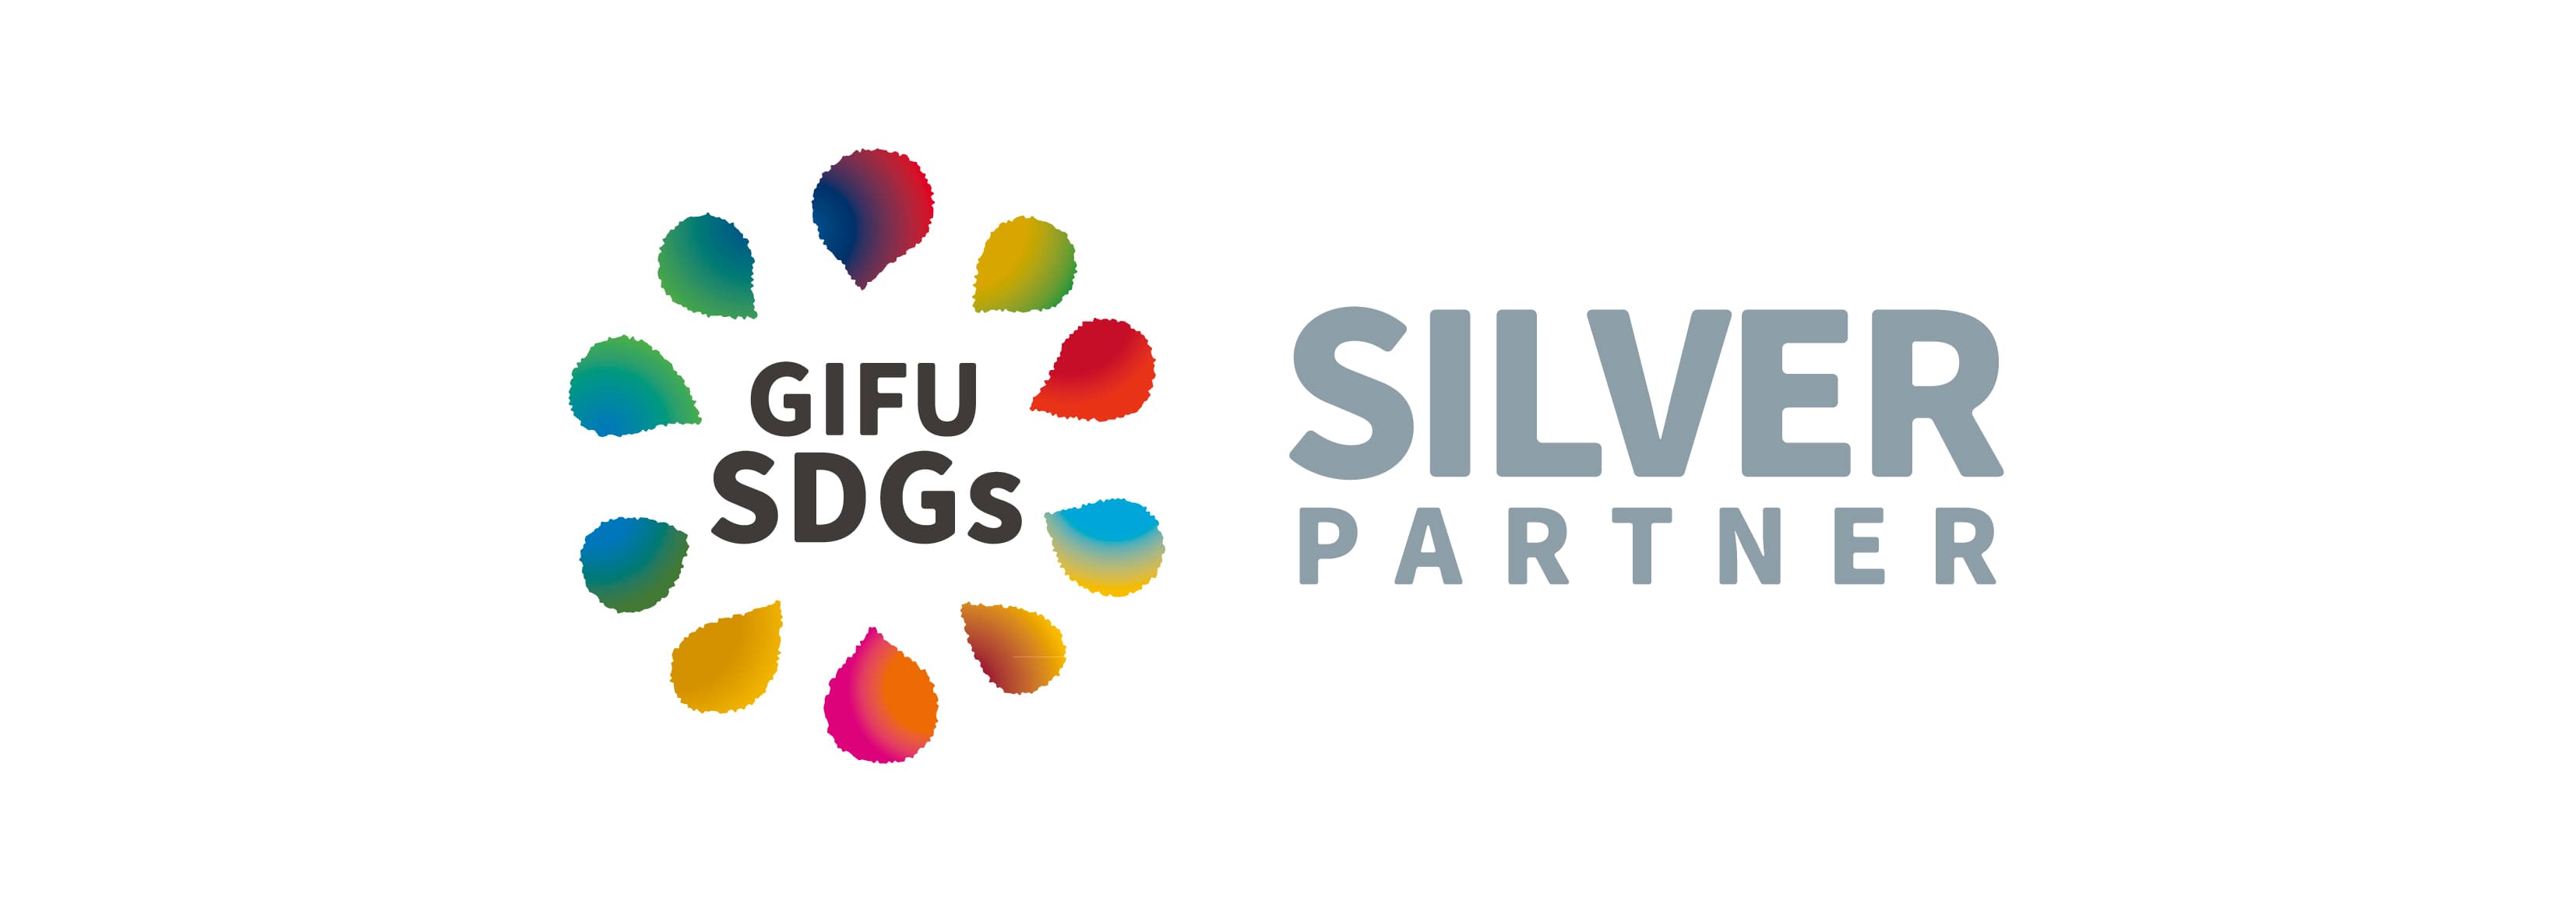 SDGs Silver partner